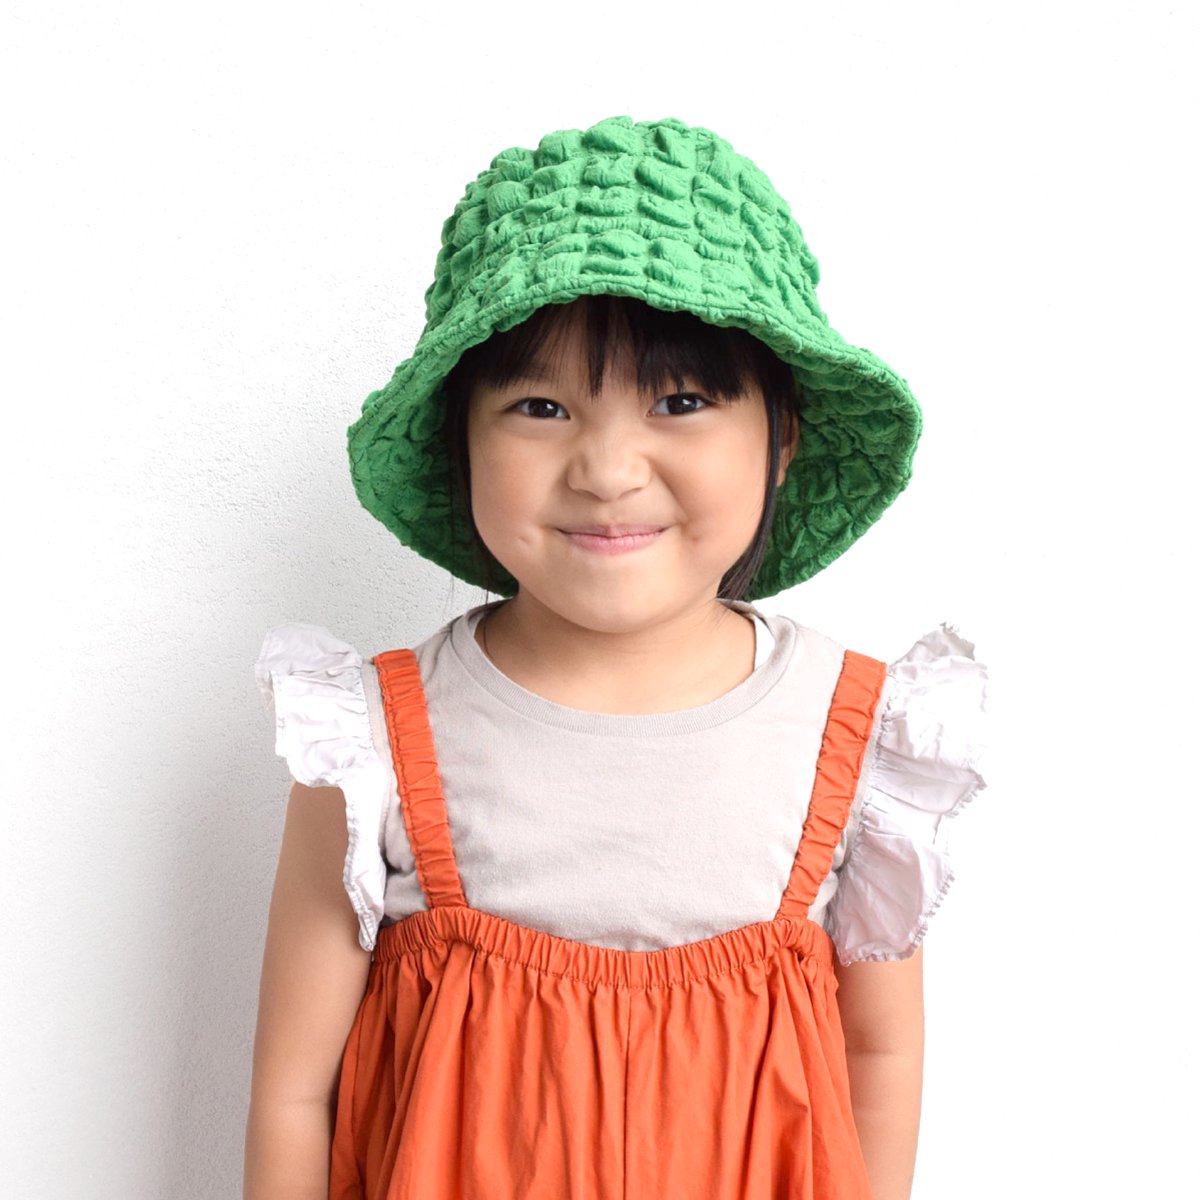  【KIDS】Kids Marsh Girl Hat